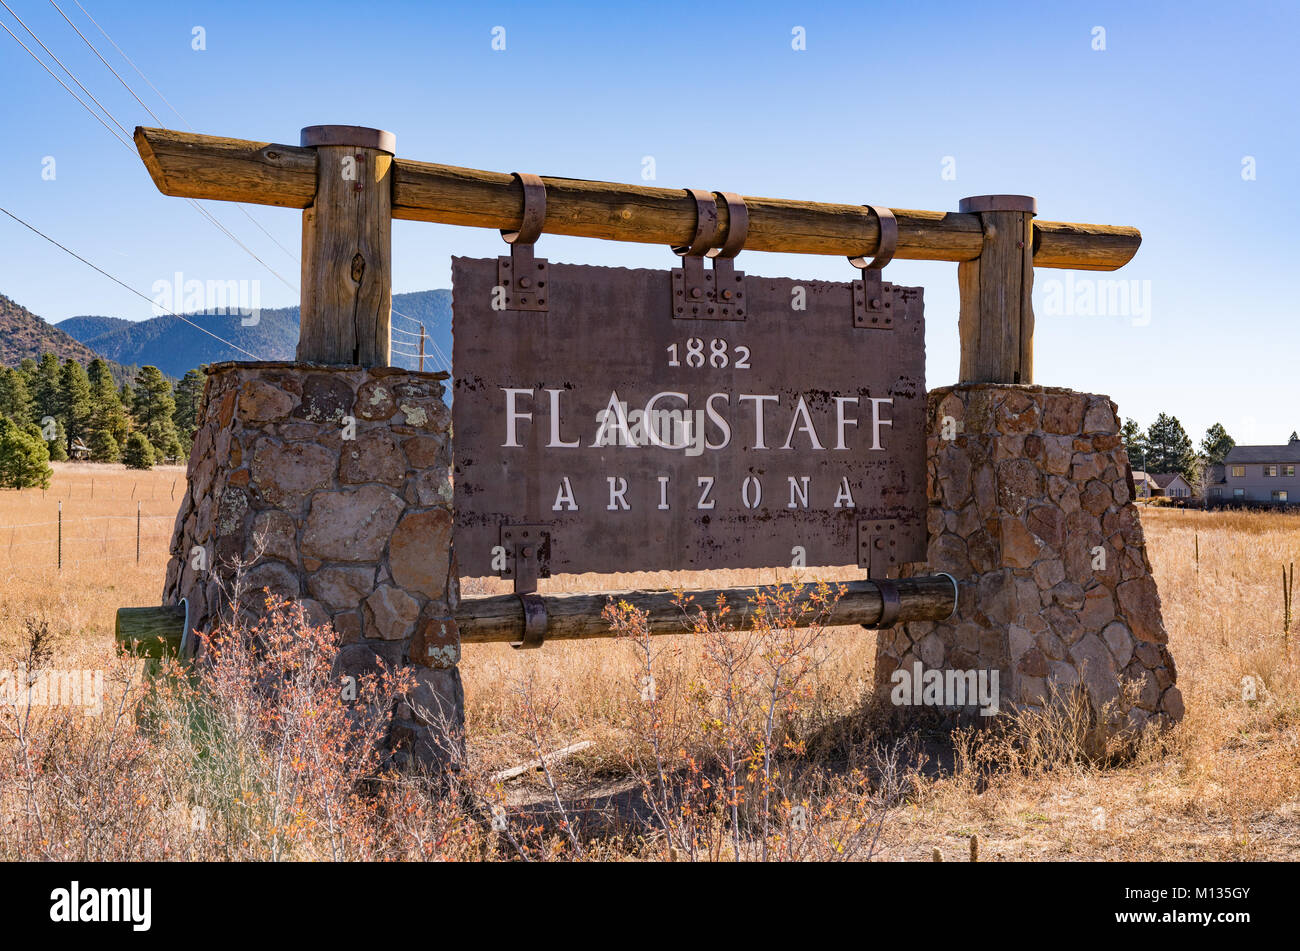 FLAGSTAFF, AZ - Octubre 24, 2017: cartel de bienvenida a las afueras de Flagstaff, Arizona Foto de stock